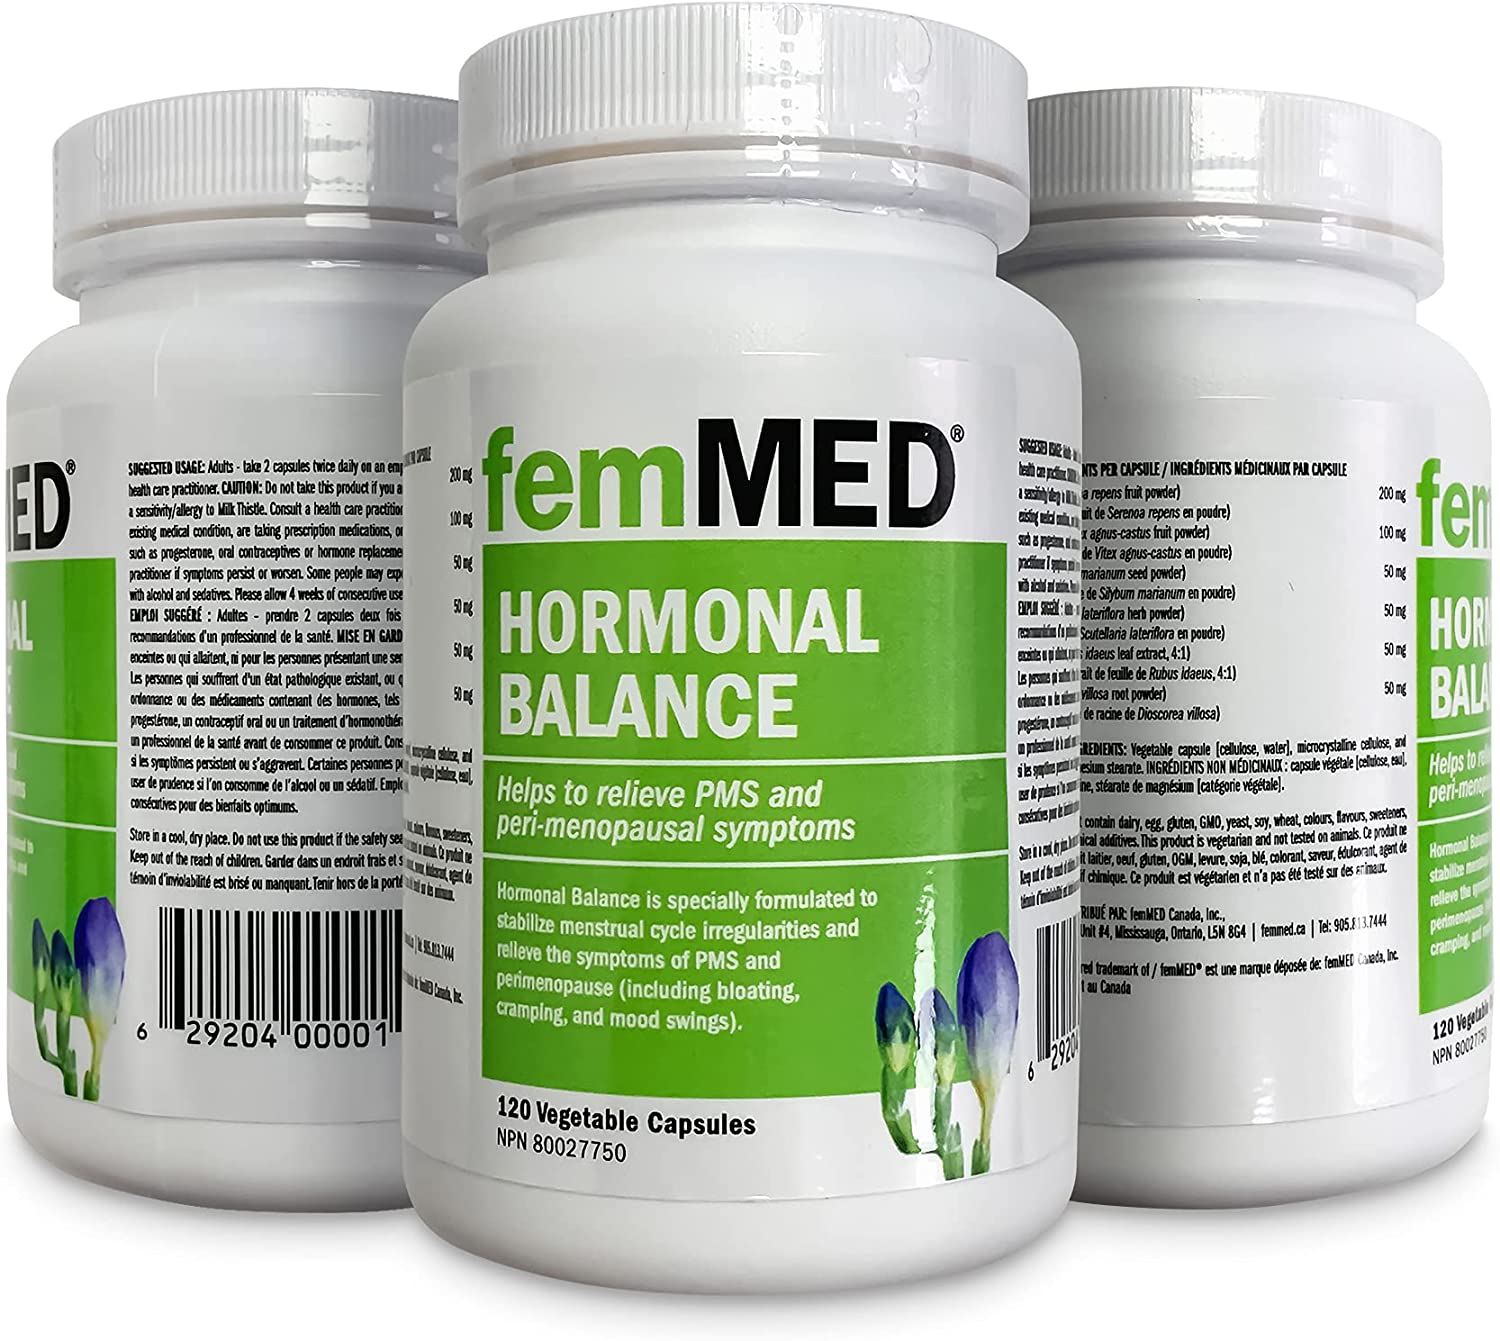 femMED Hormonal Balance